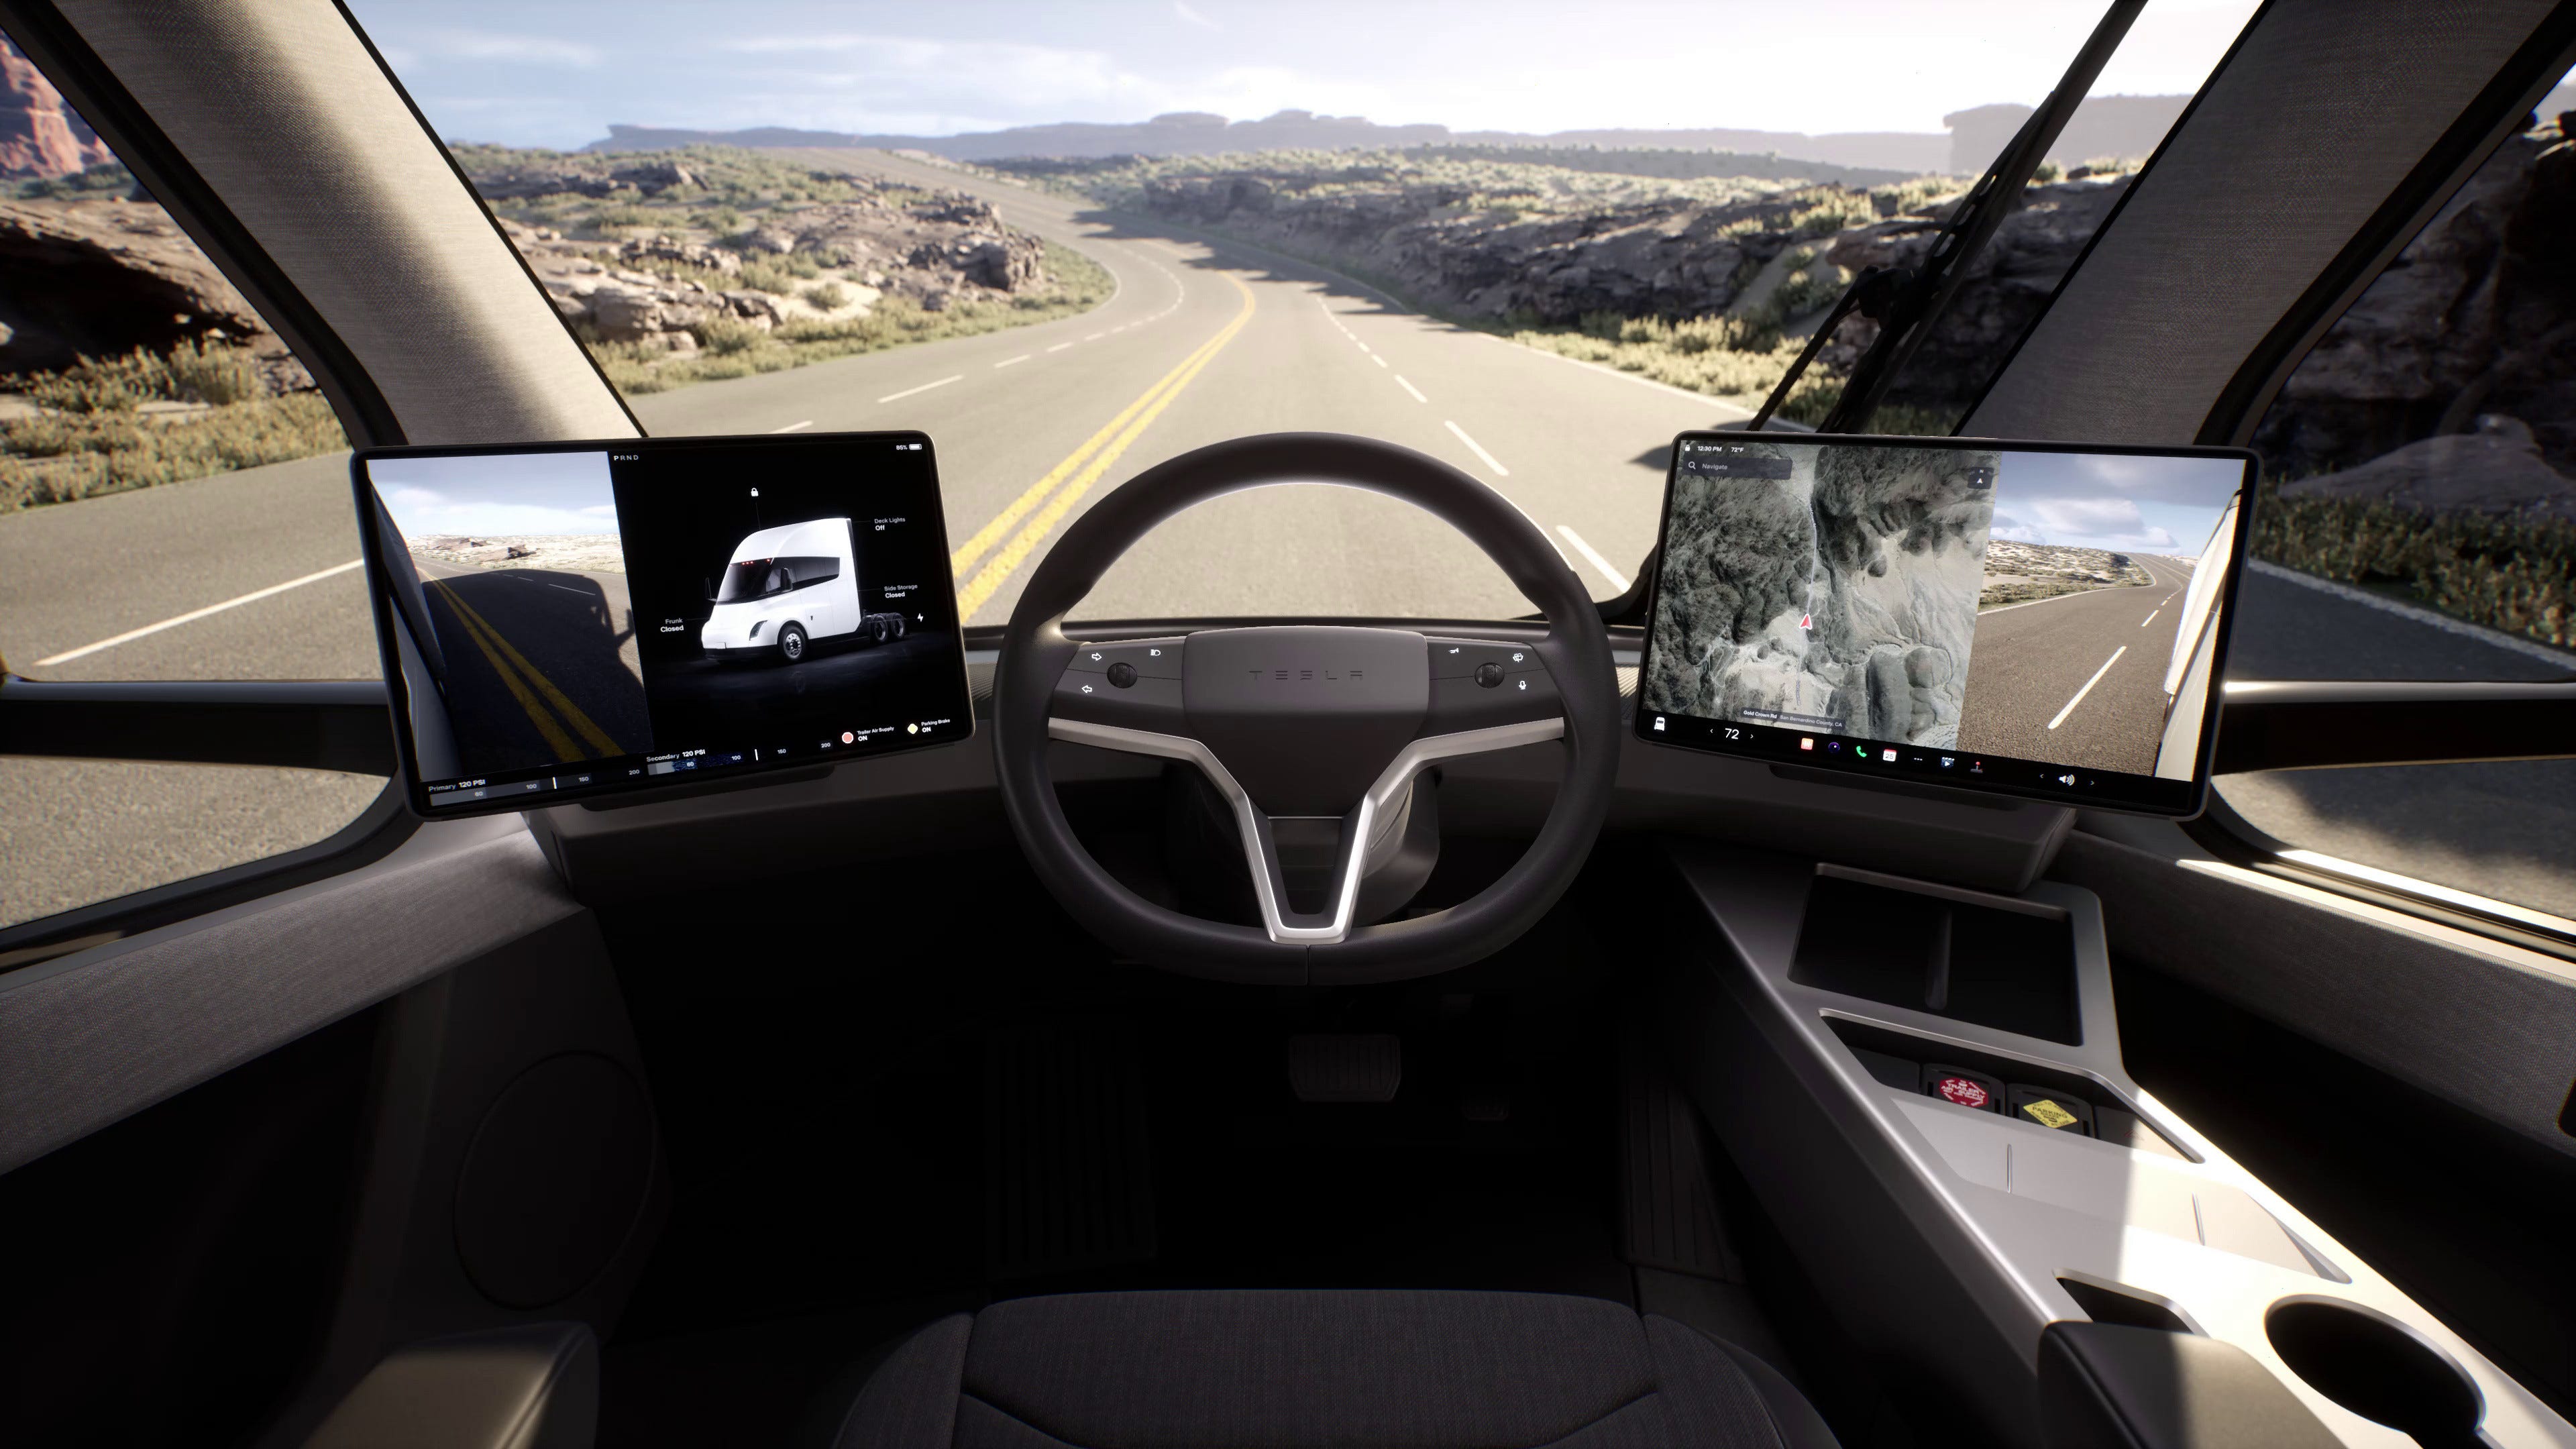 Der Innenraum eines Tesla Semi zeigt zwei Bildschirme auf beiden Seiten des Lenkrads, Knöpfe und Getränkehalter